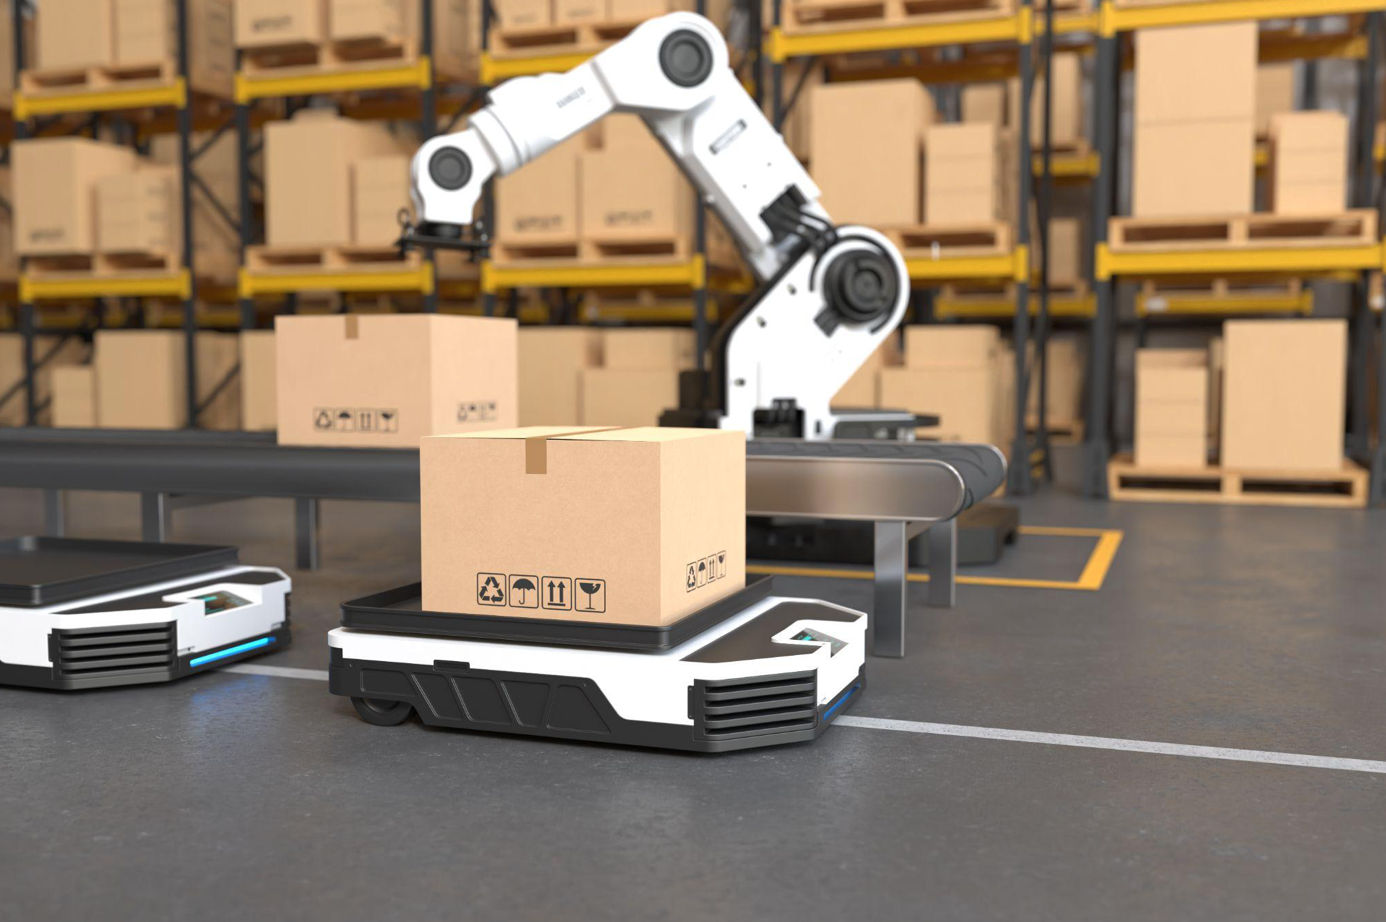 Robot arm picking up box autonomously; image by User6702303, via Freepik.com.